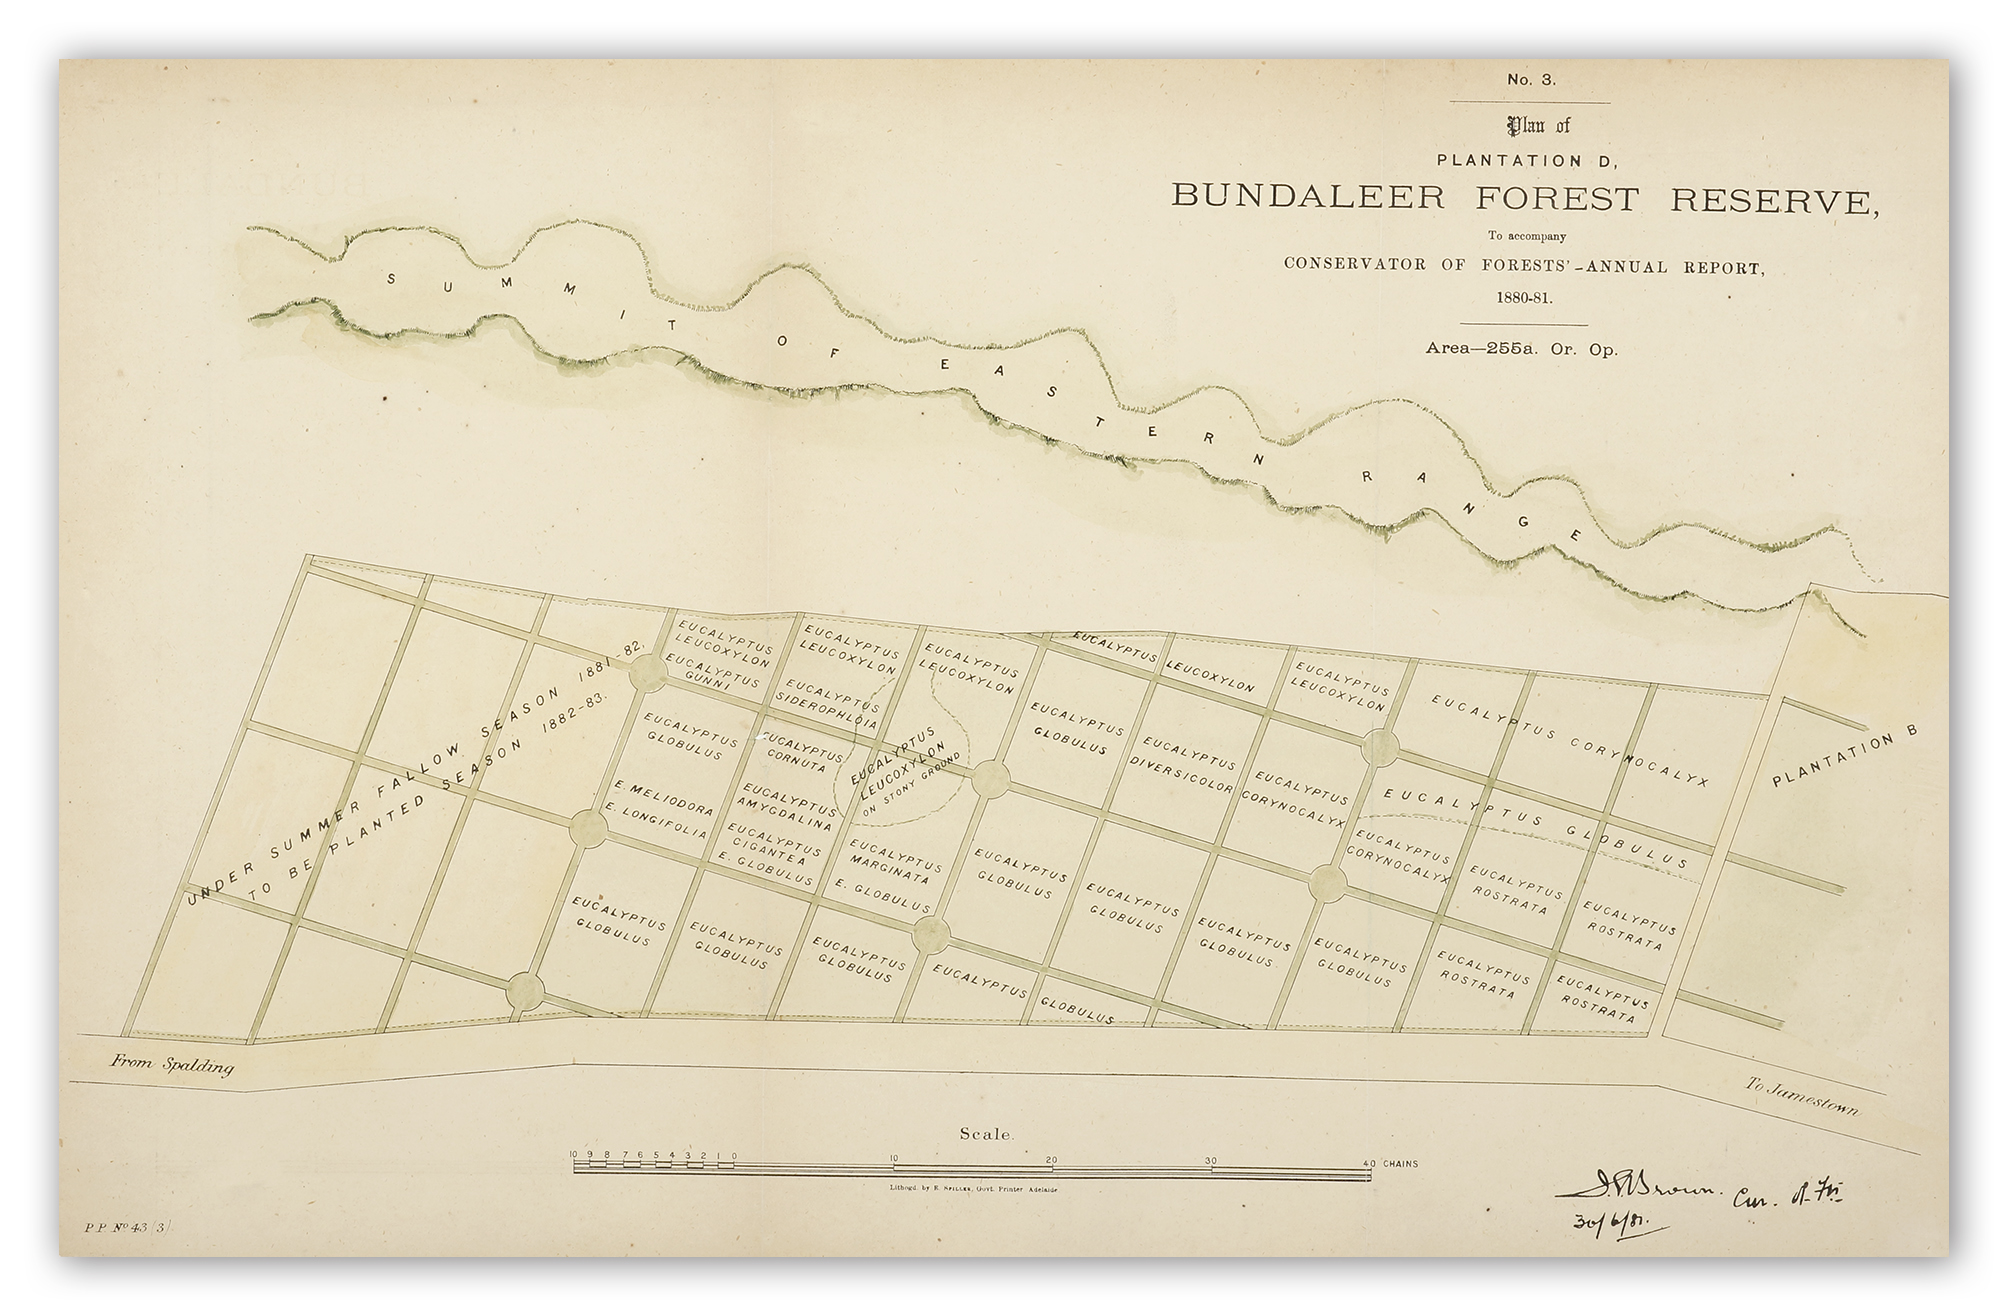 Plantation D, Bundaleer Forest Reserve, .... - Antique Map from 1881